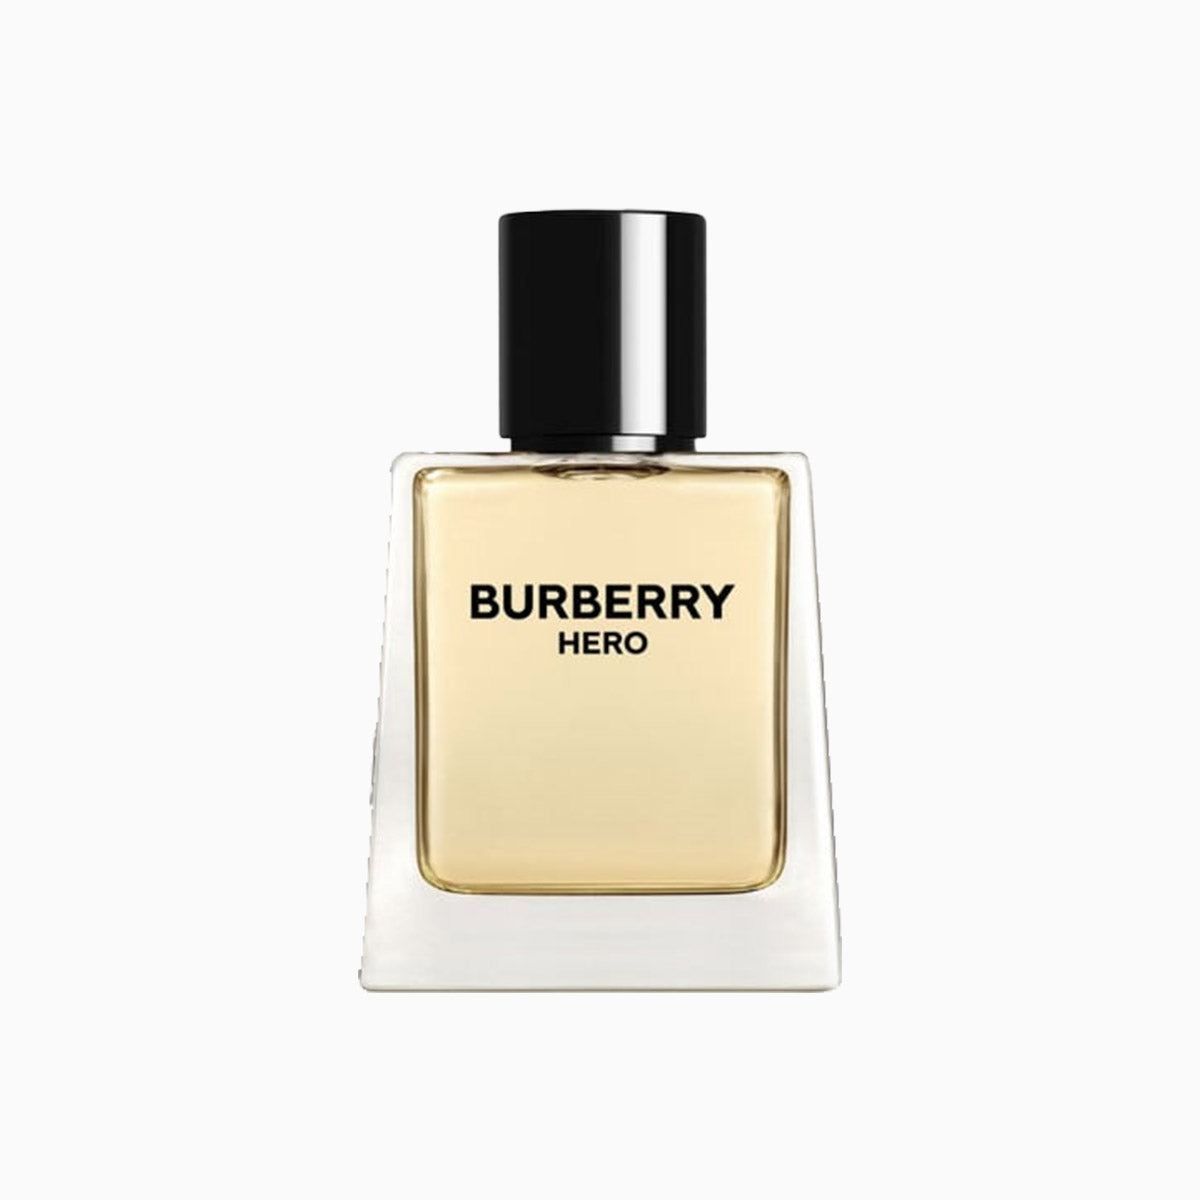 mens-burberry-hero-edt-spray-3-4-oz-perfume-3614229820799